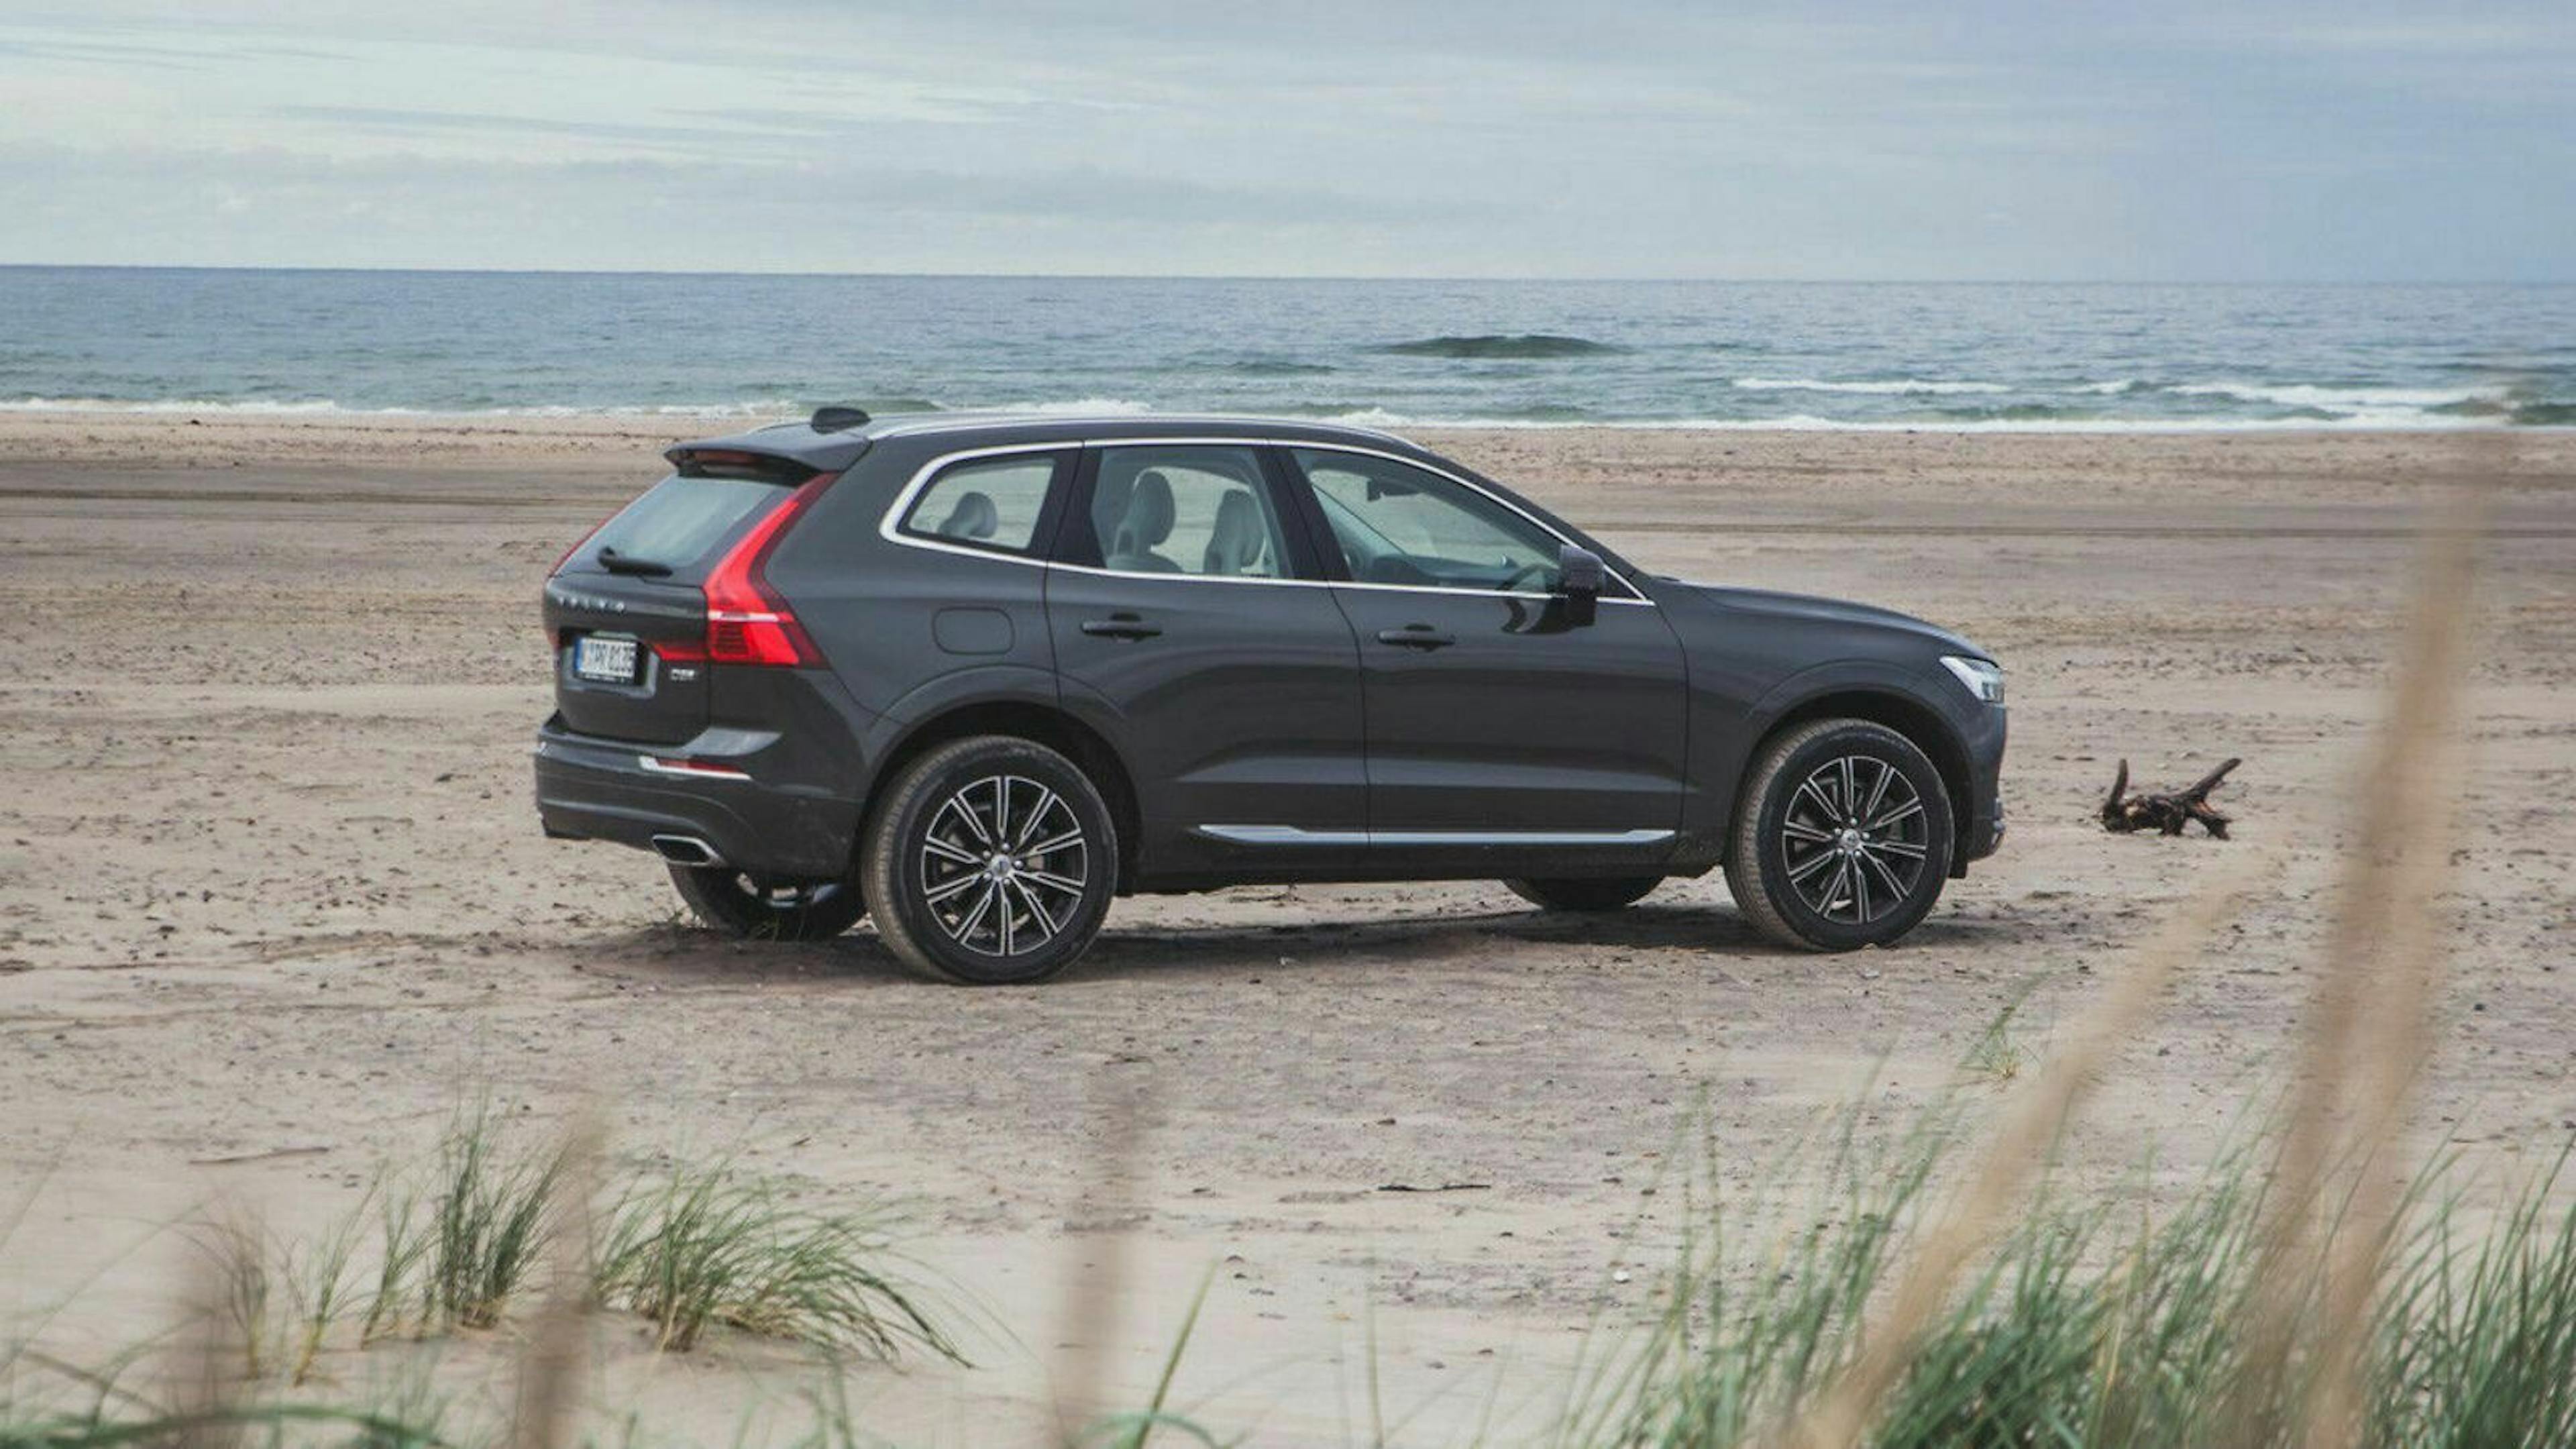 Seitenansicht des Volvo XC60 stehend am Strand. Im Hintergrund ist das Meer zu sehen.